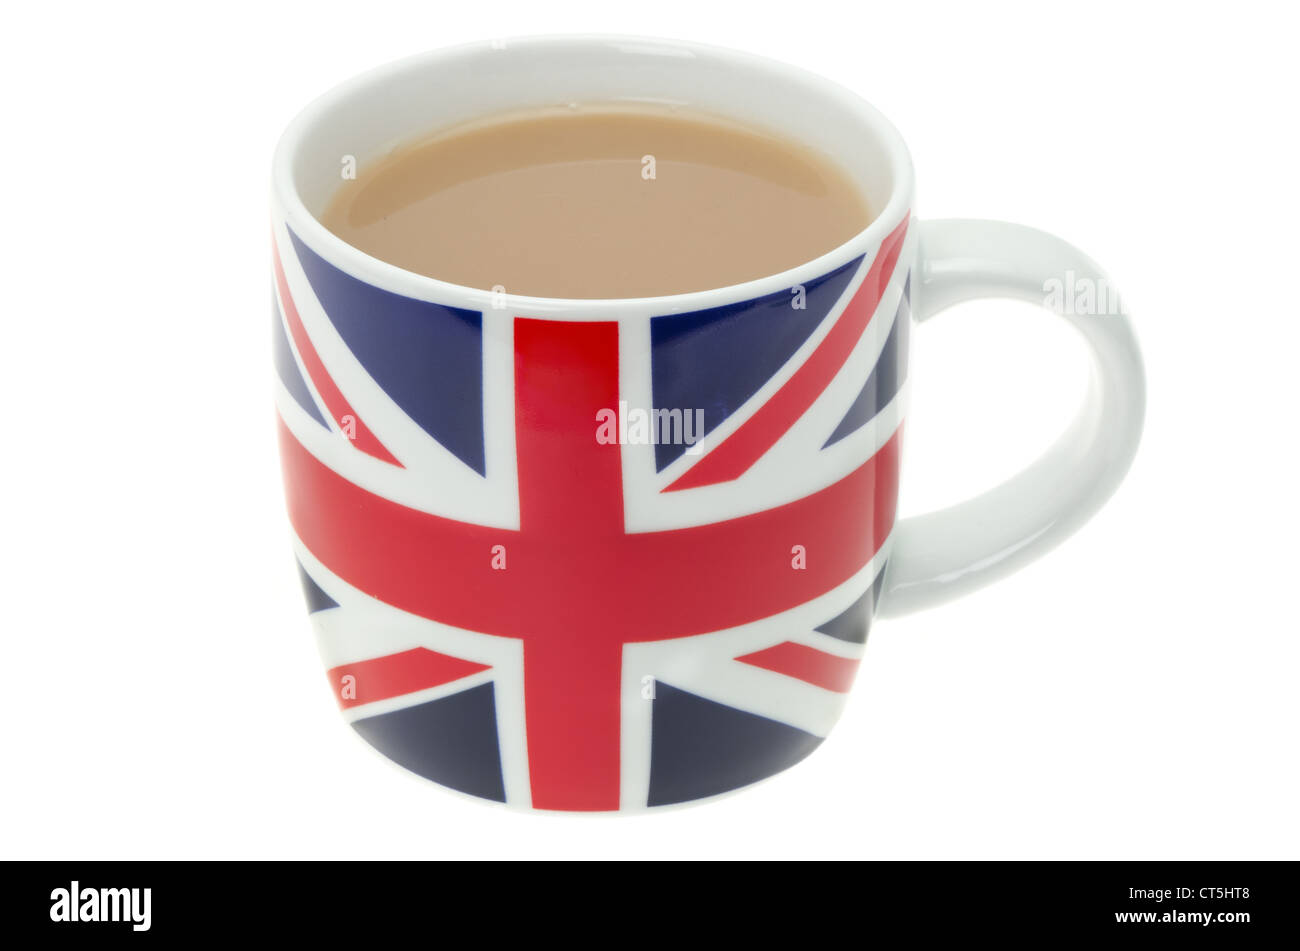 Eine Tasse ziert eine britische Flagge "Union Jack" und voller heißer Tee - Studio mit einem weißen Hintergrund gedreht. Stockfoto